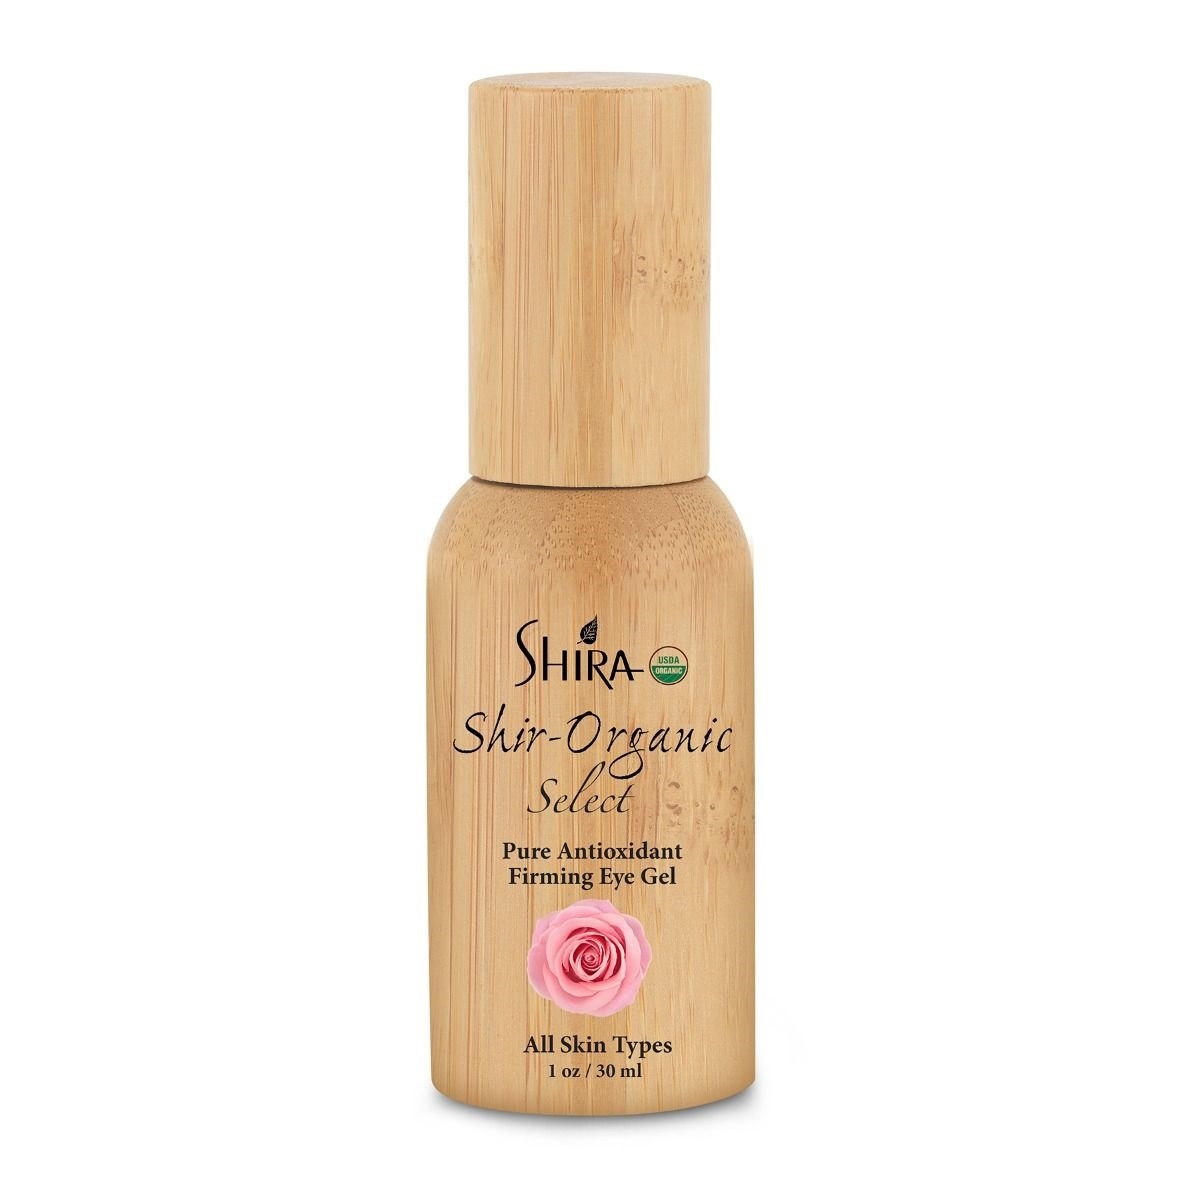 Shira Shir-Organic Select Pure Antioxidant Firming Eye Gel